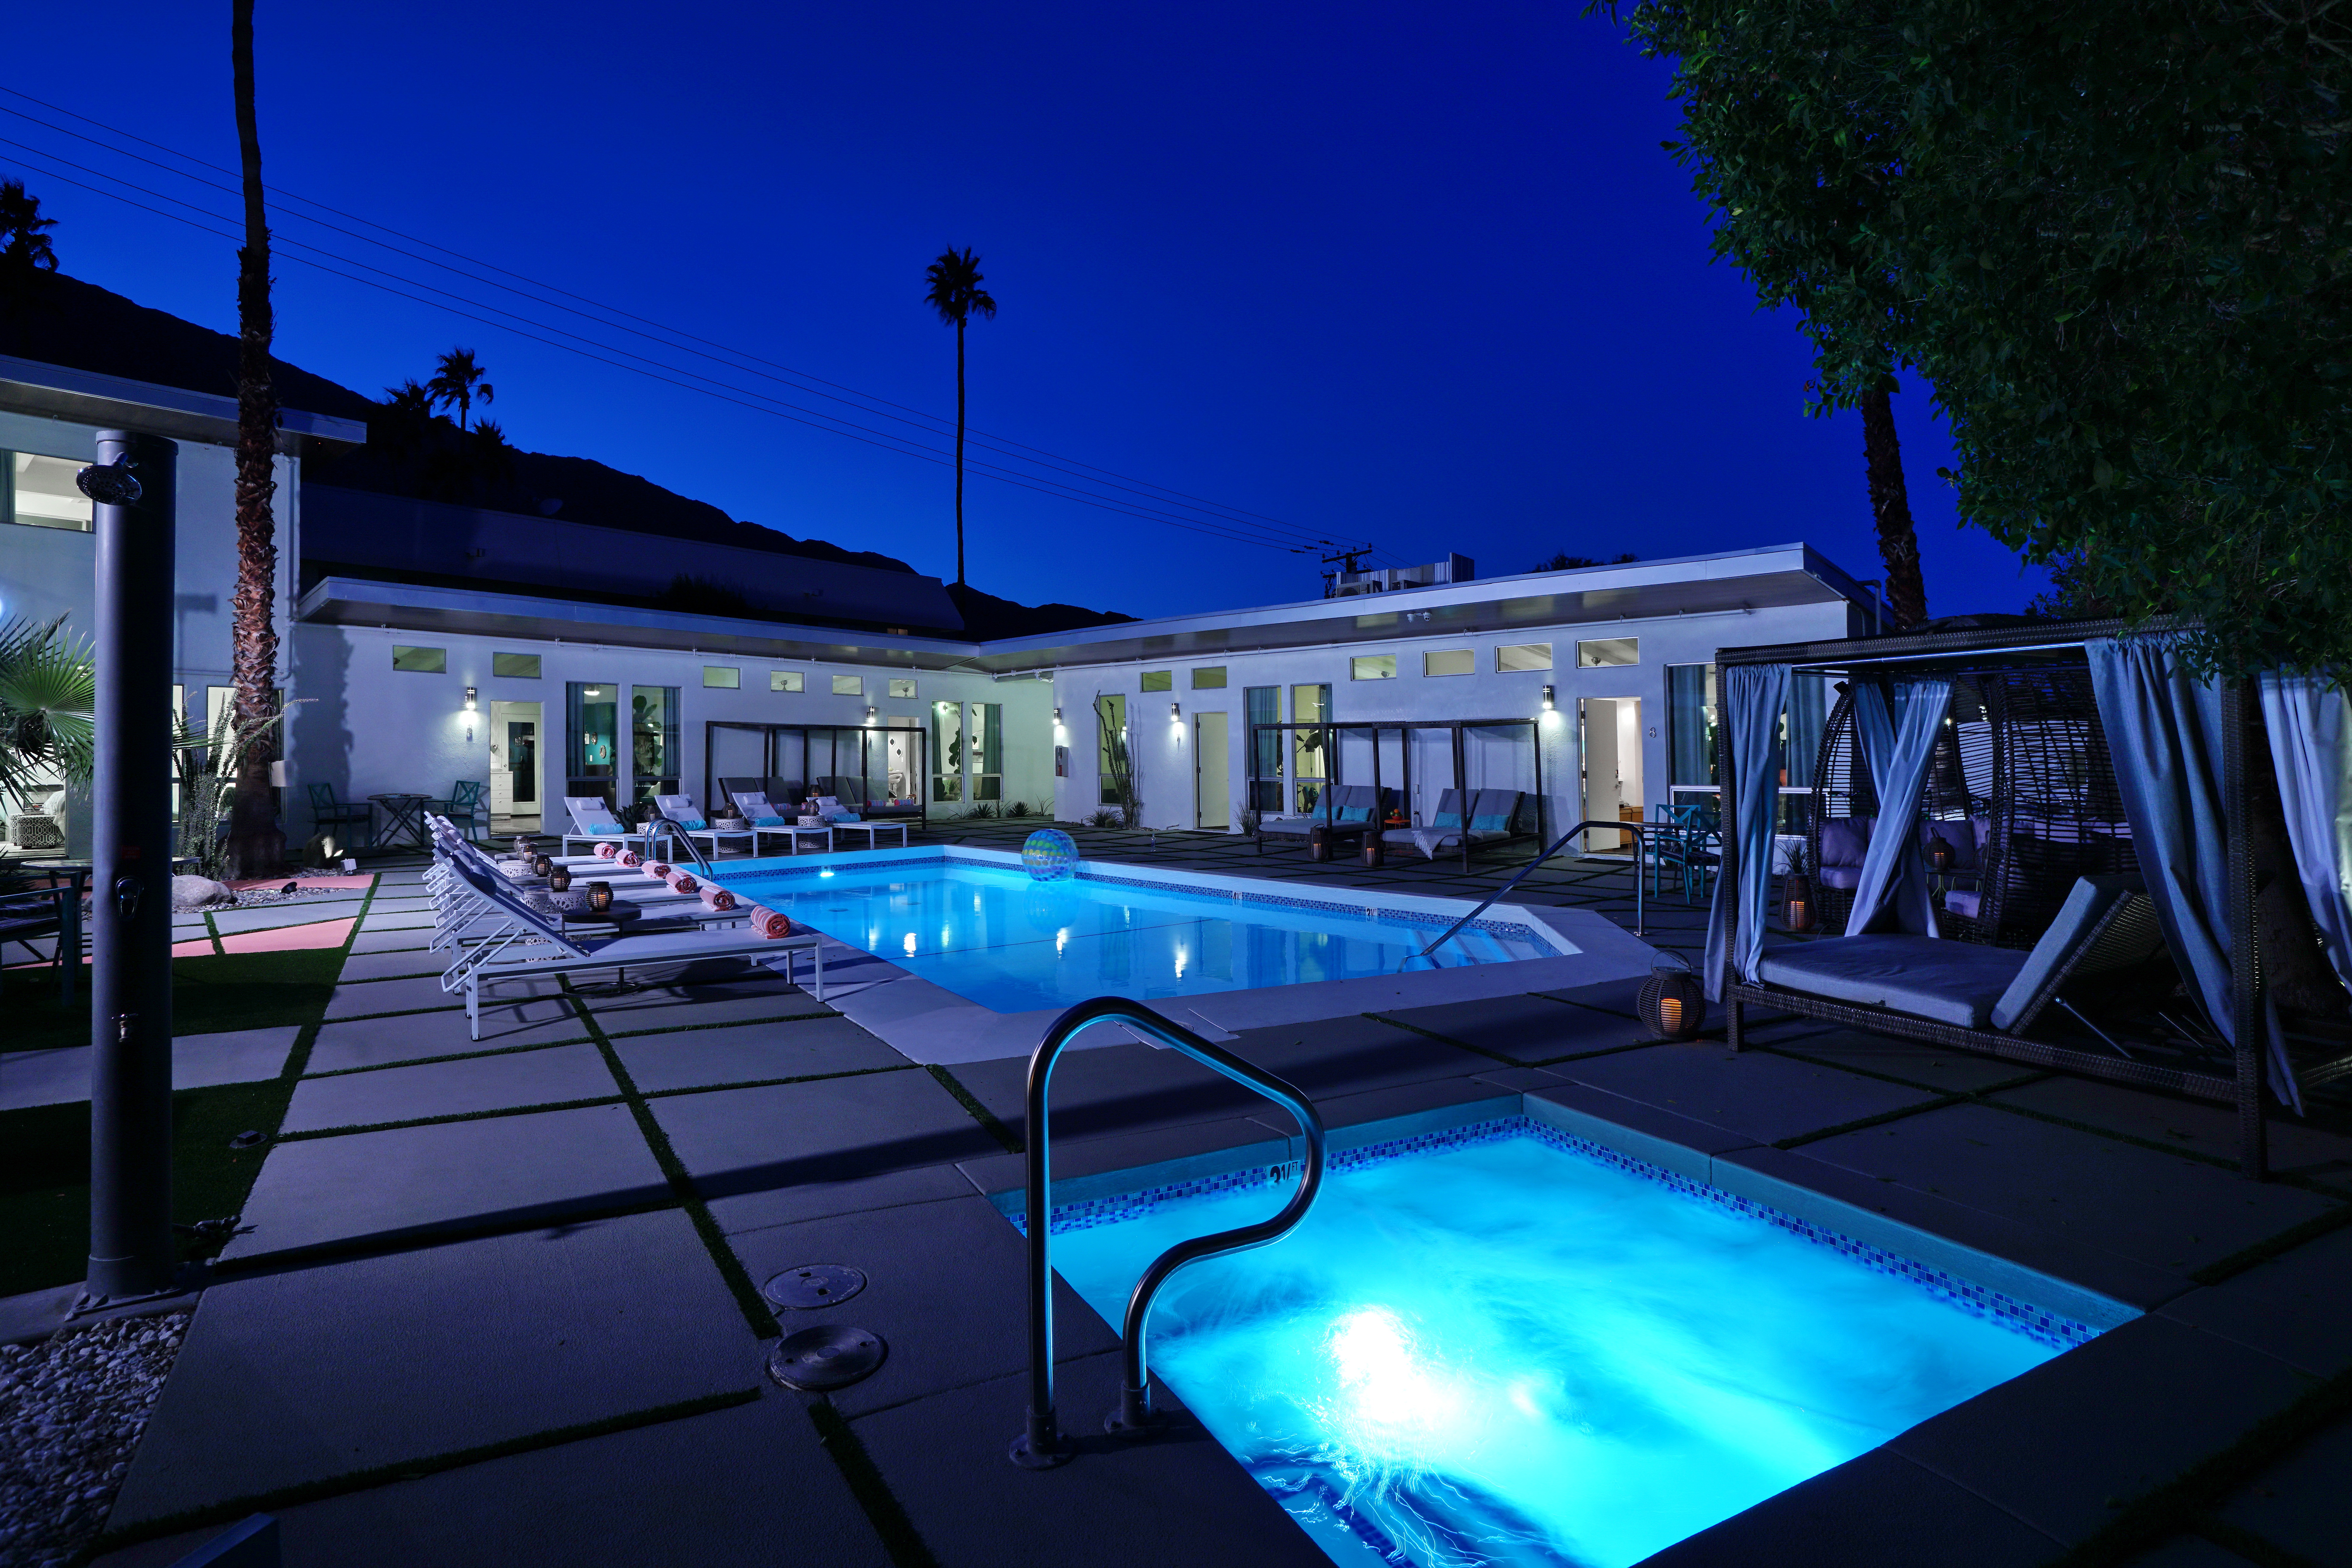 Wesley Palm Springs pool at night